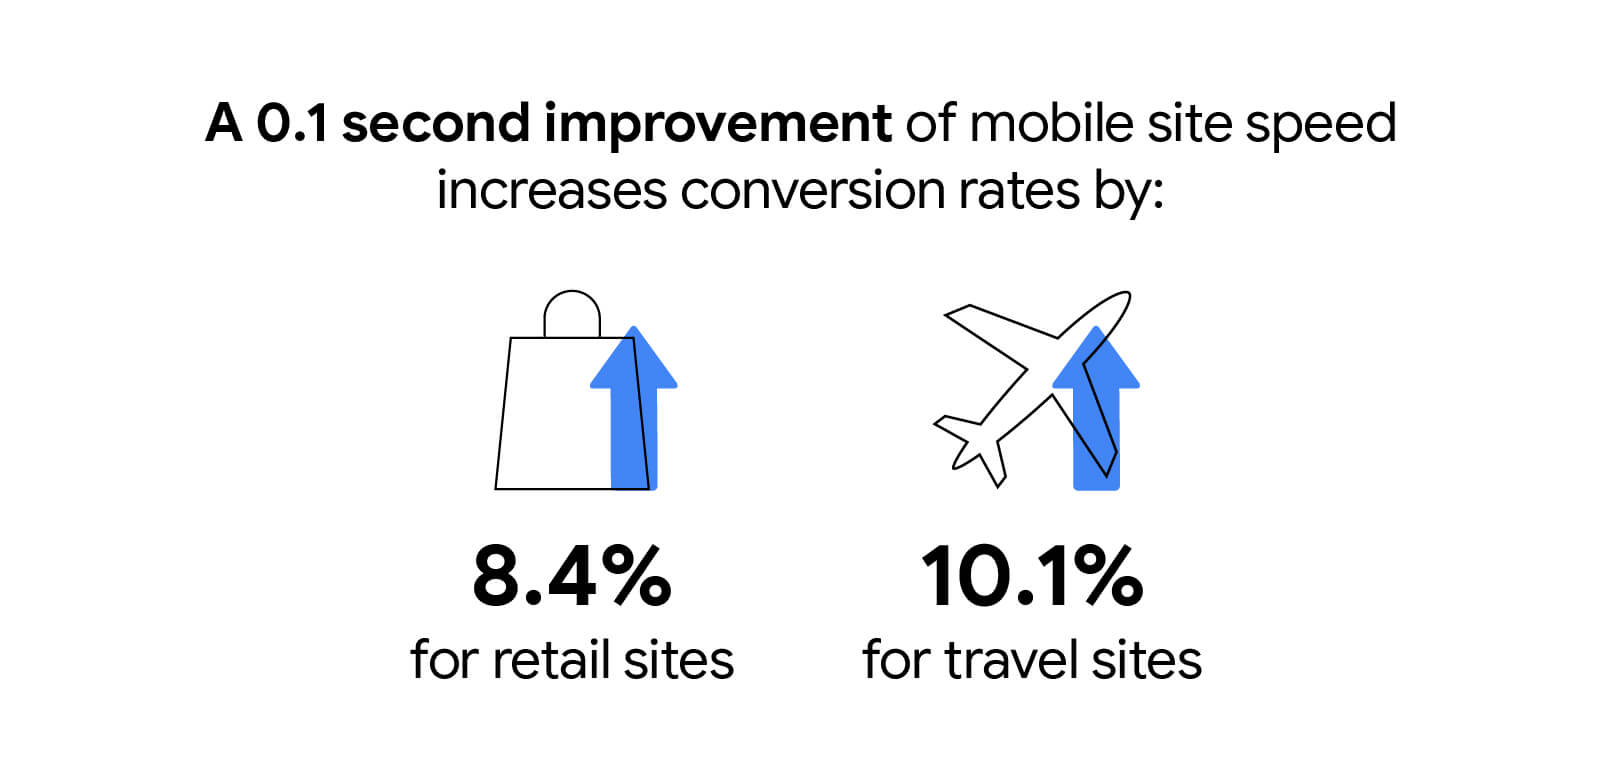 بهبود 0.1 ثانیه ای سرعت سایت موبایل، نرخ تبدیل را تا 8.4 درصد برای سایت های خرده فروشی و 10.1 درصد برای سایت های مسافرتی افزایش می دهد.